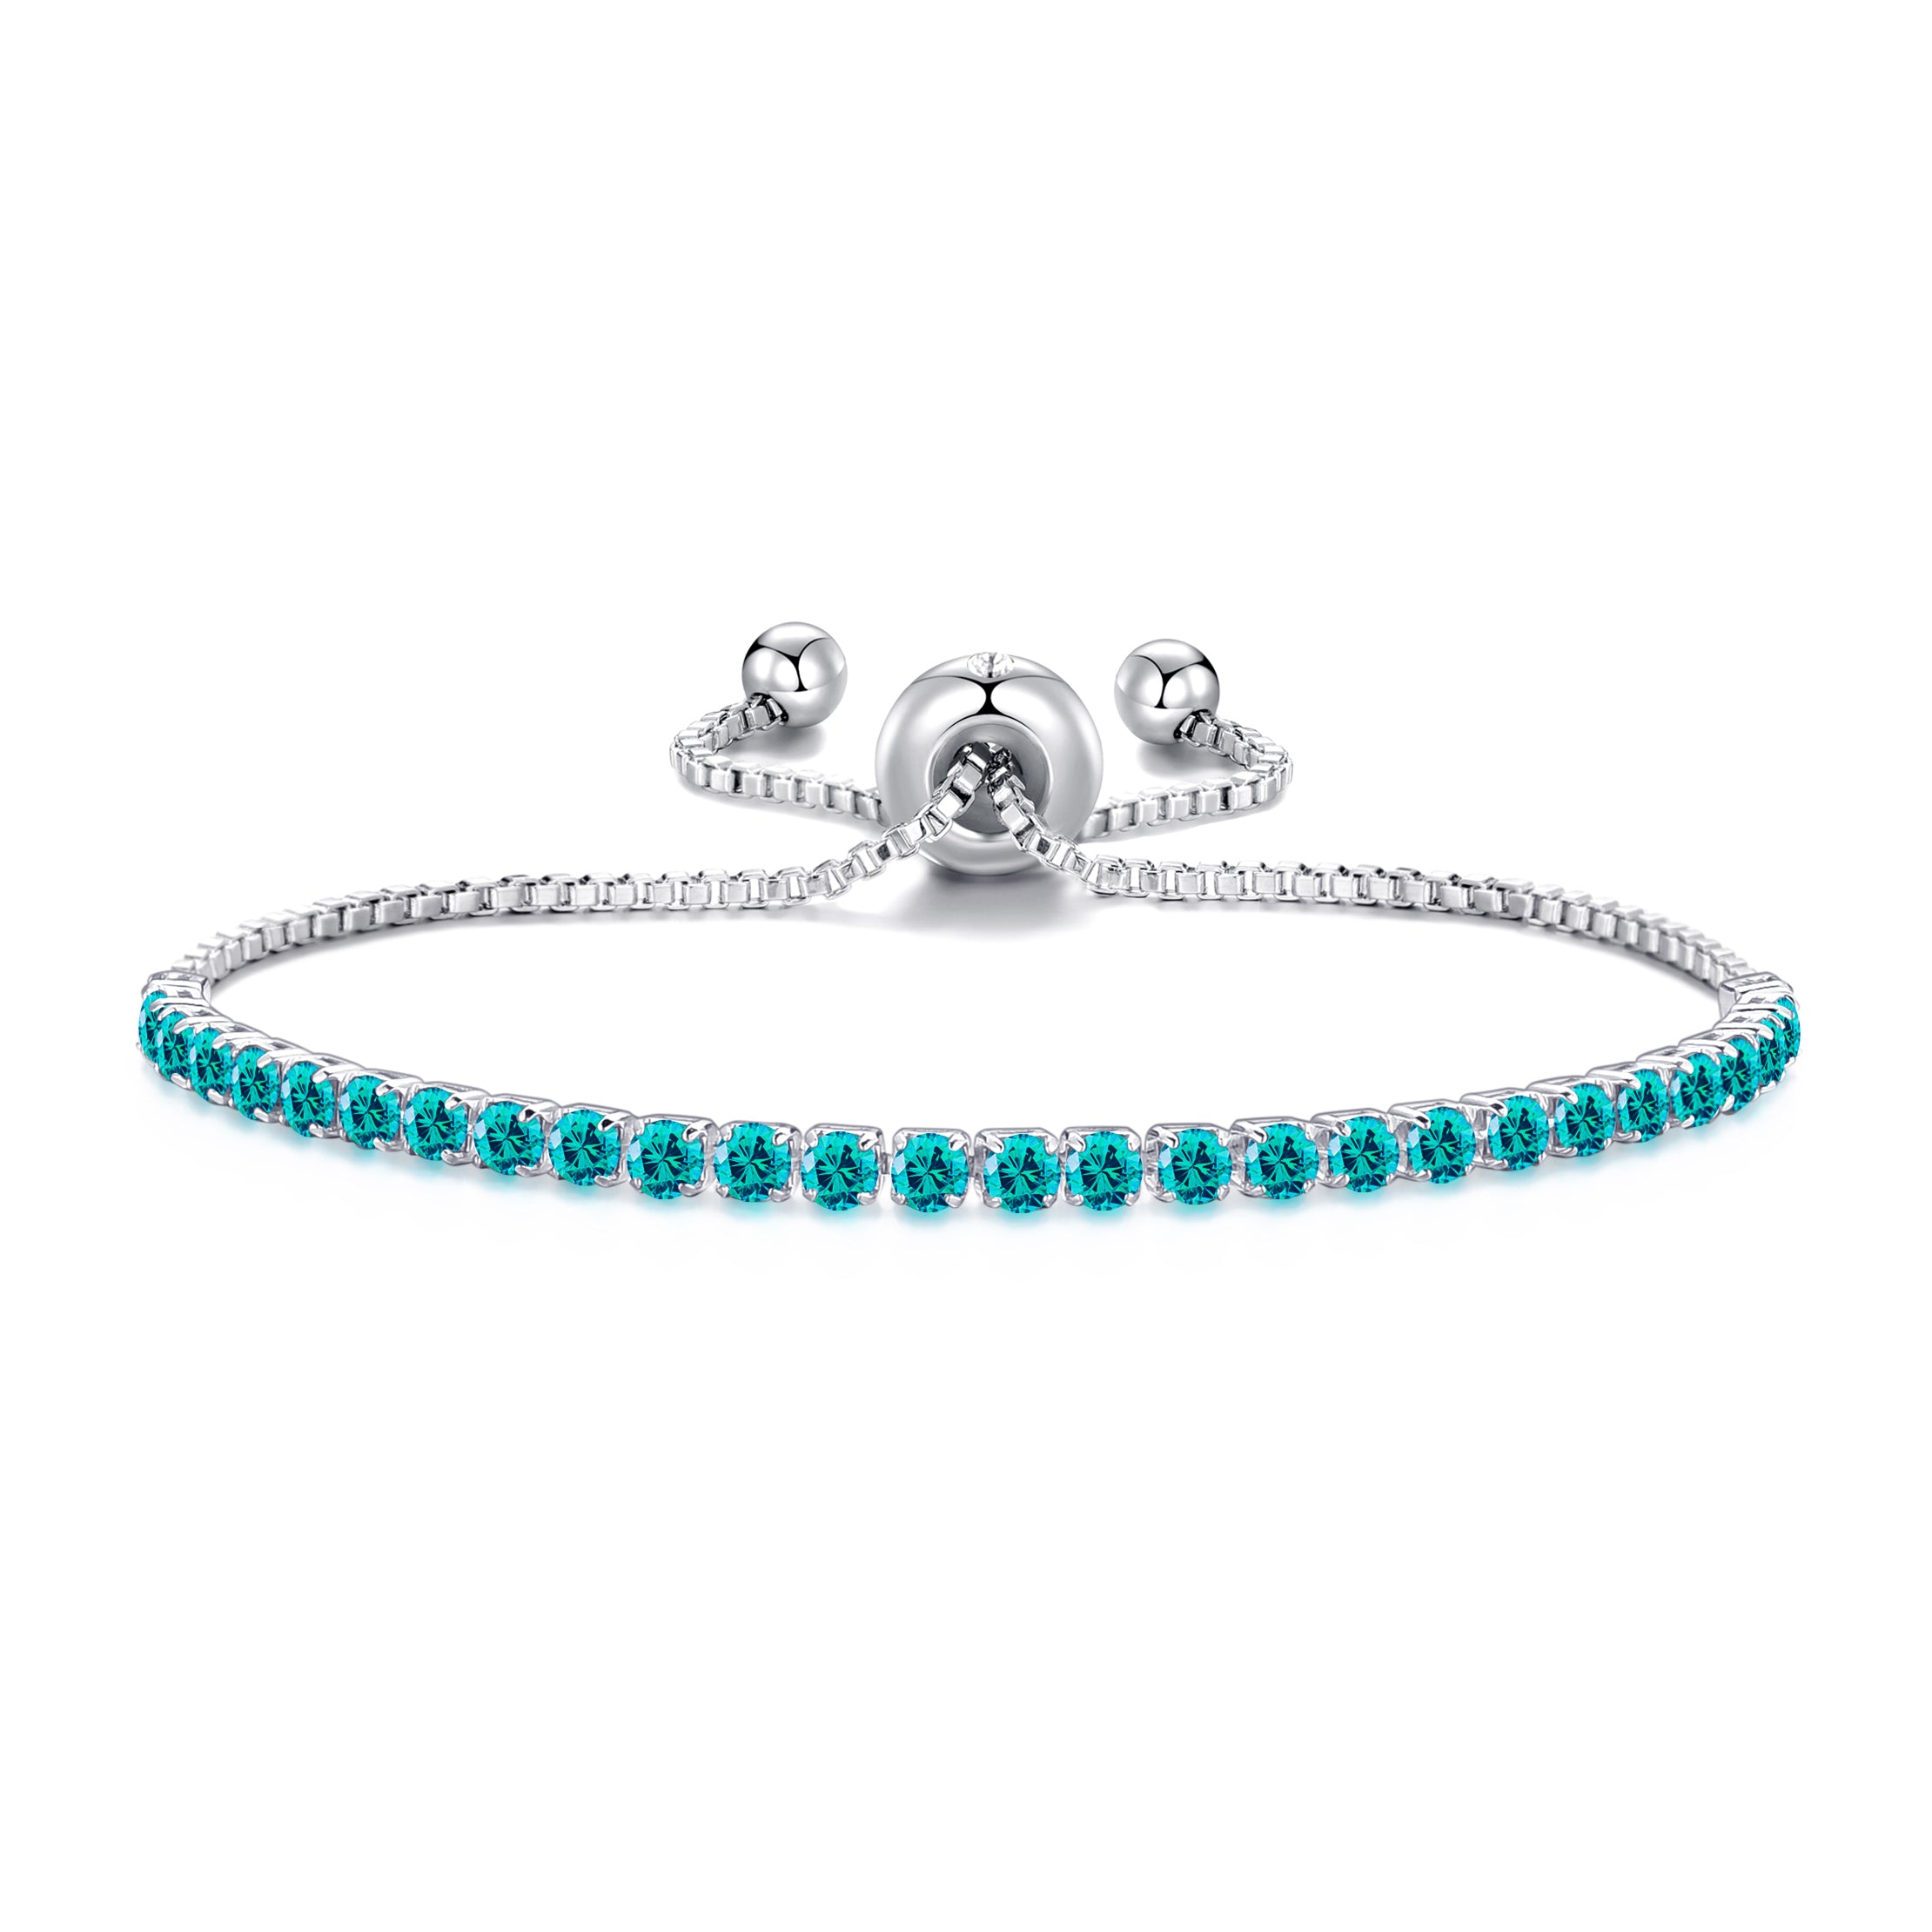 December Birthstone Friendship Bracelet with Blue Topaz Zircondia® Crystals